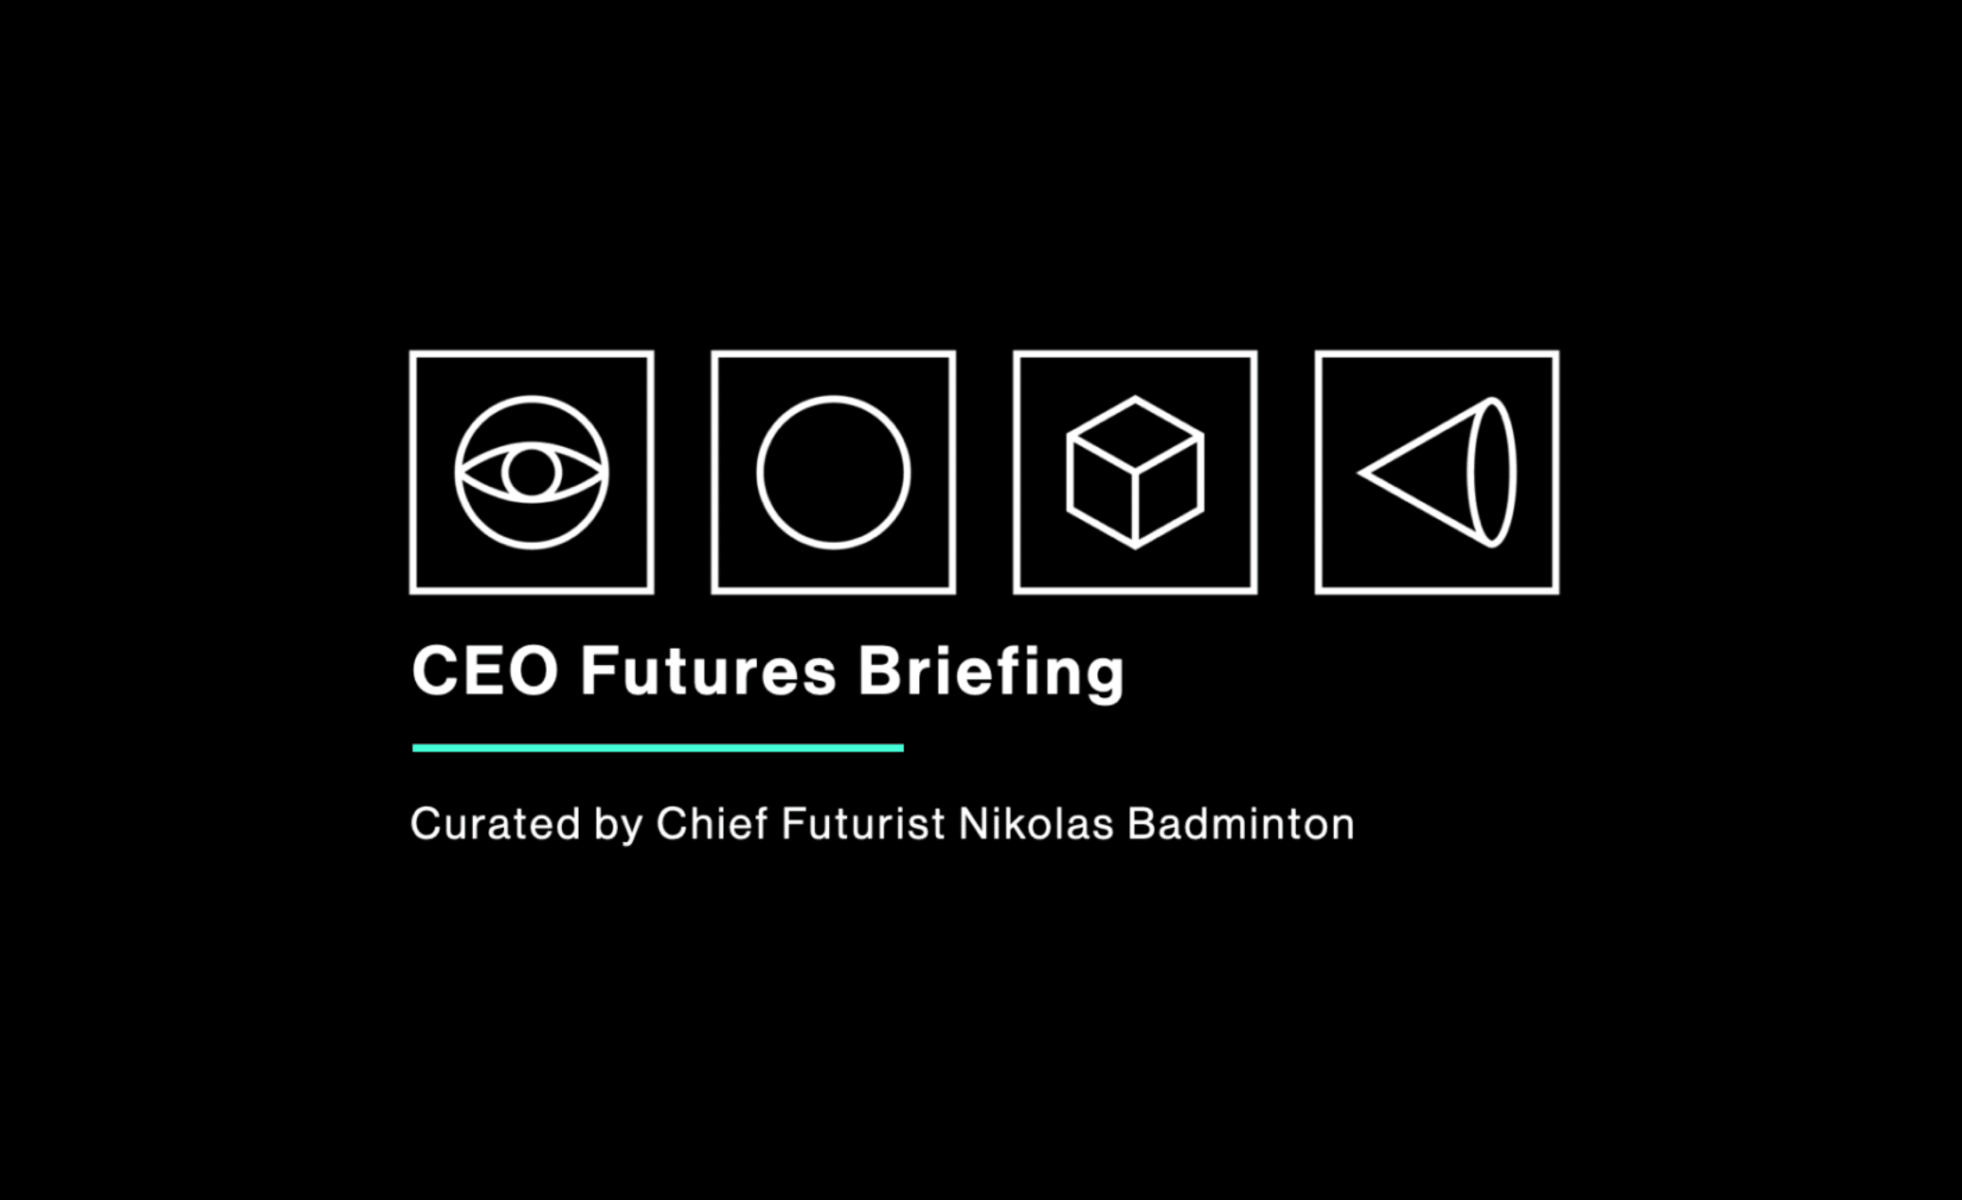 CEO Futures Briefing